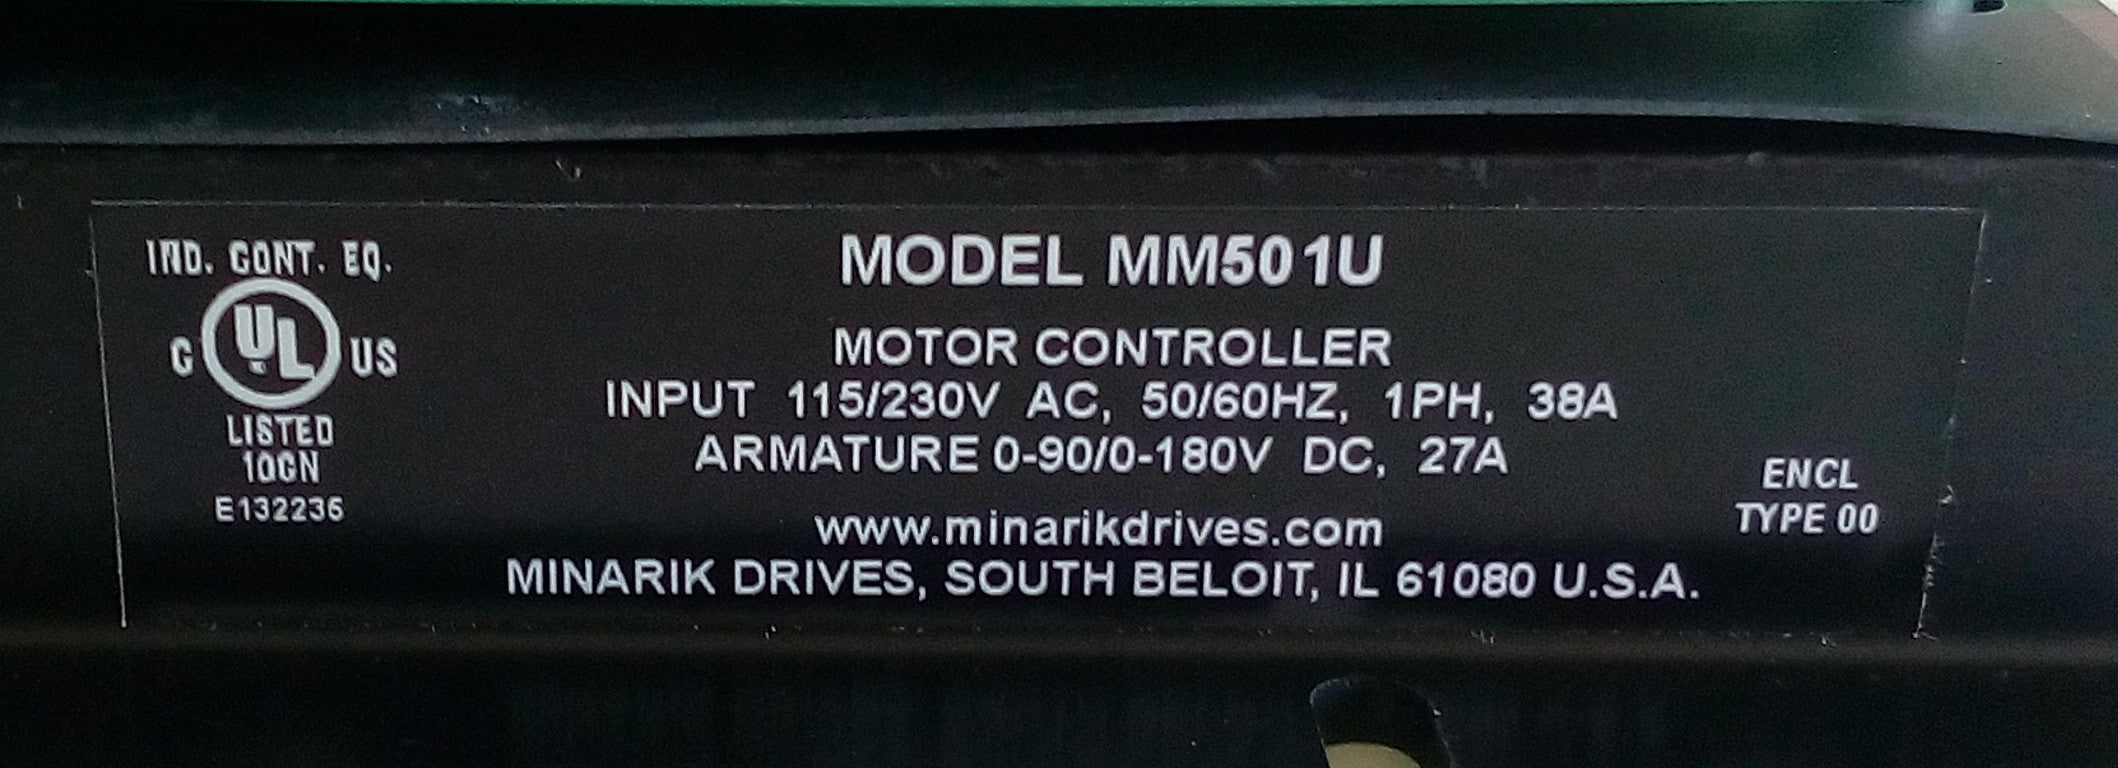 Tarjeta de Control Minarik Drives MM501U